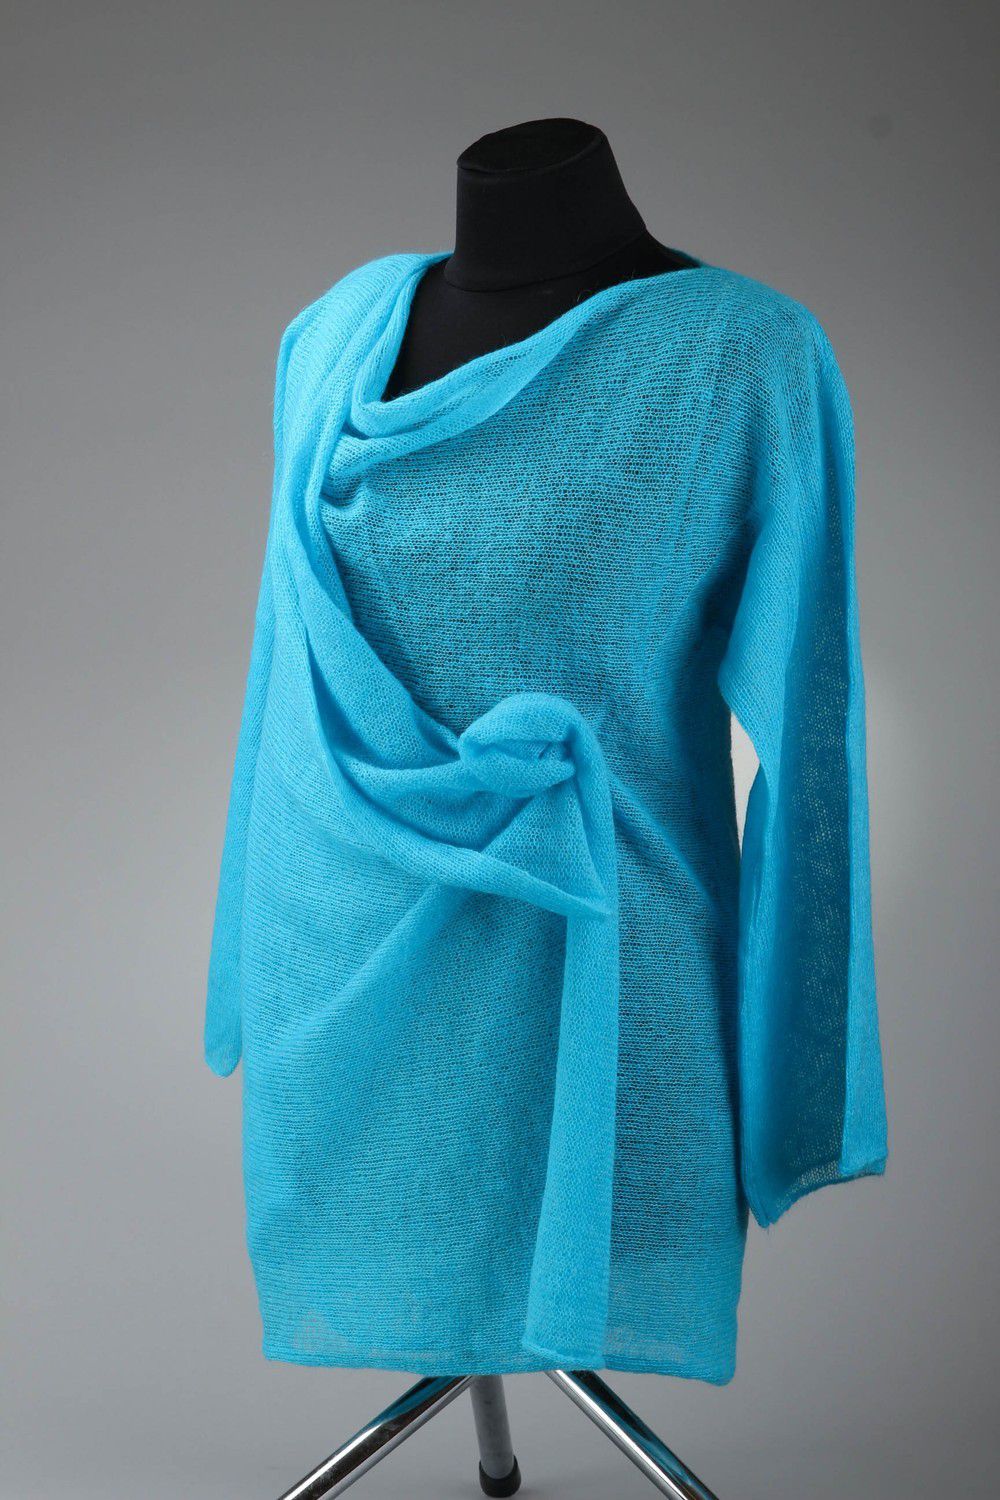 Cardigan tricoté bleu pour femme photo 1